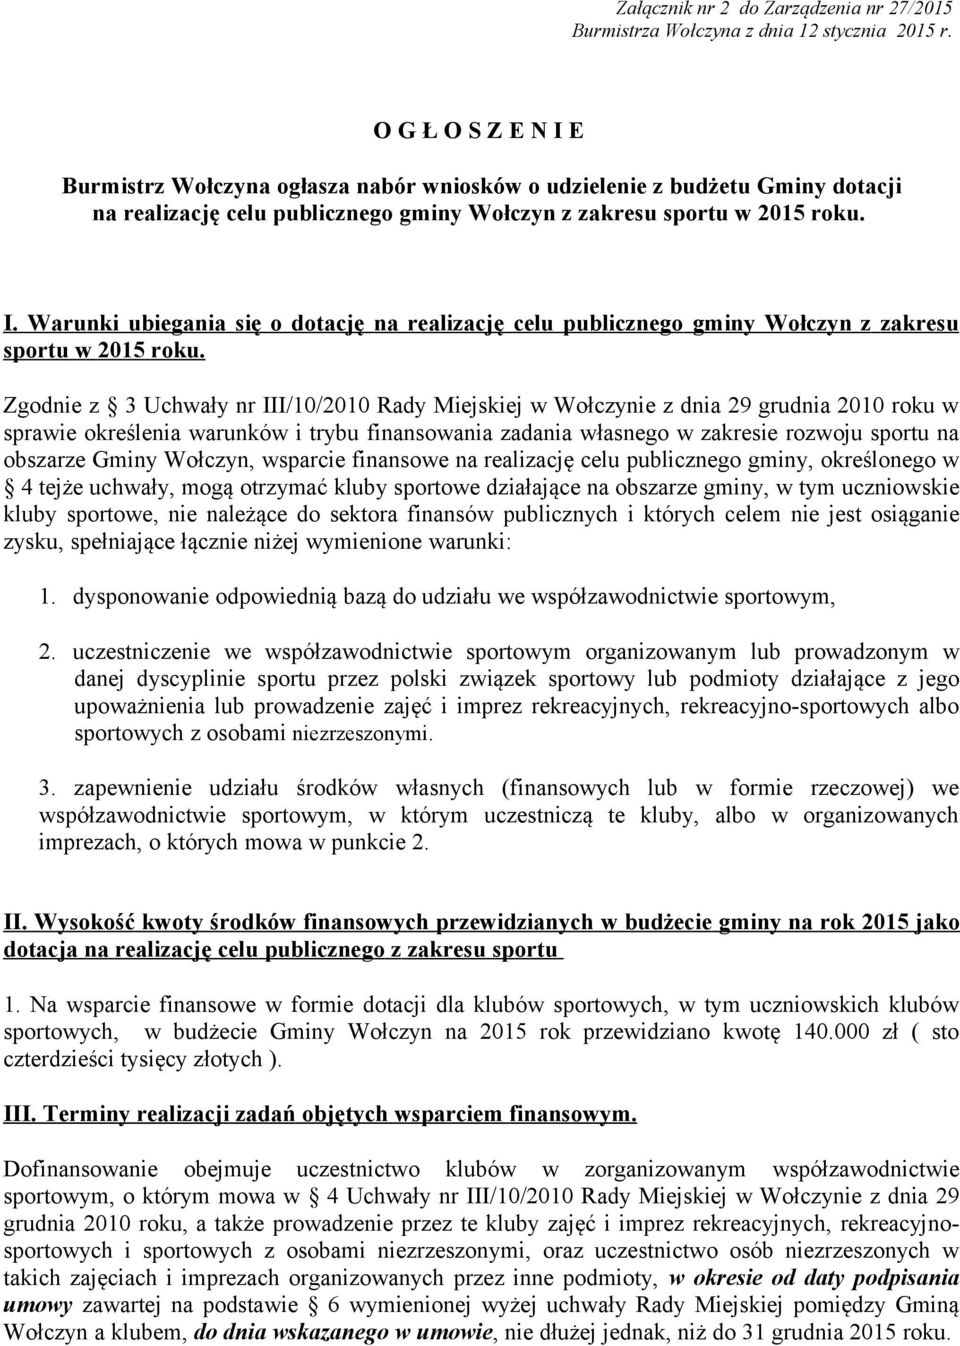 Zgodnie z 3 Uchwały nr III/10/2010 Rady Miejskiej w Wołczynie z dnia 29 grudnia 2010 roku w sprawie określenia warunków i trybu finansowania zadania własnego w zakresie rozwoju sportu na obszarze